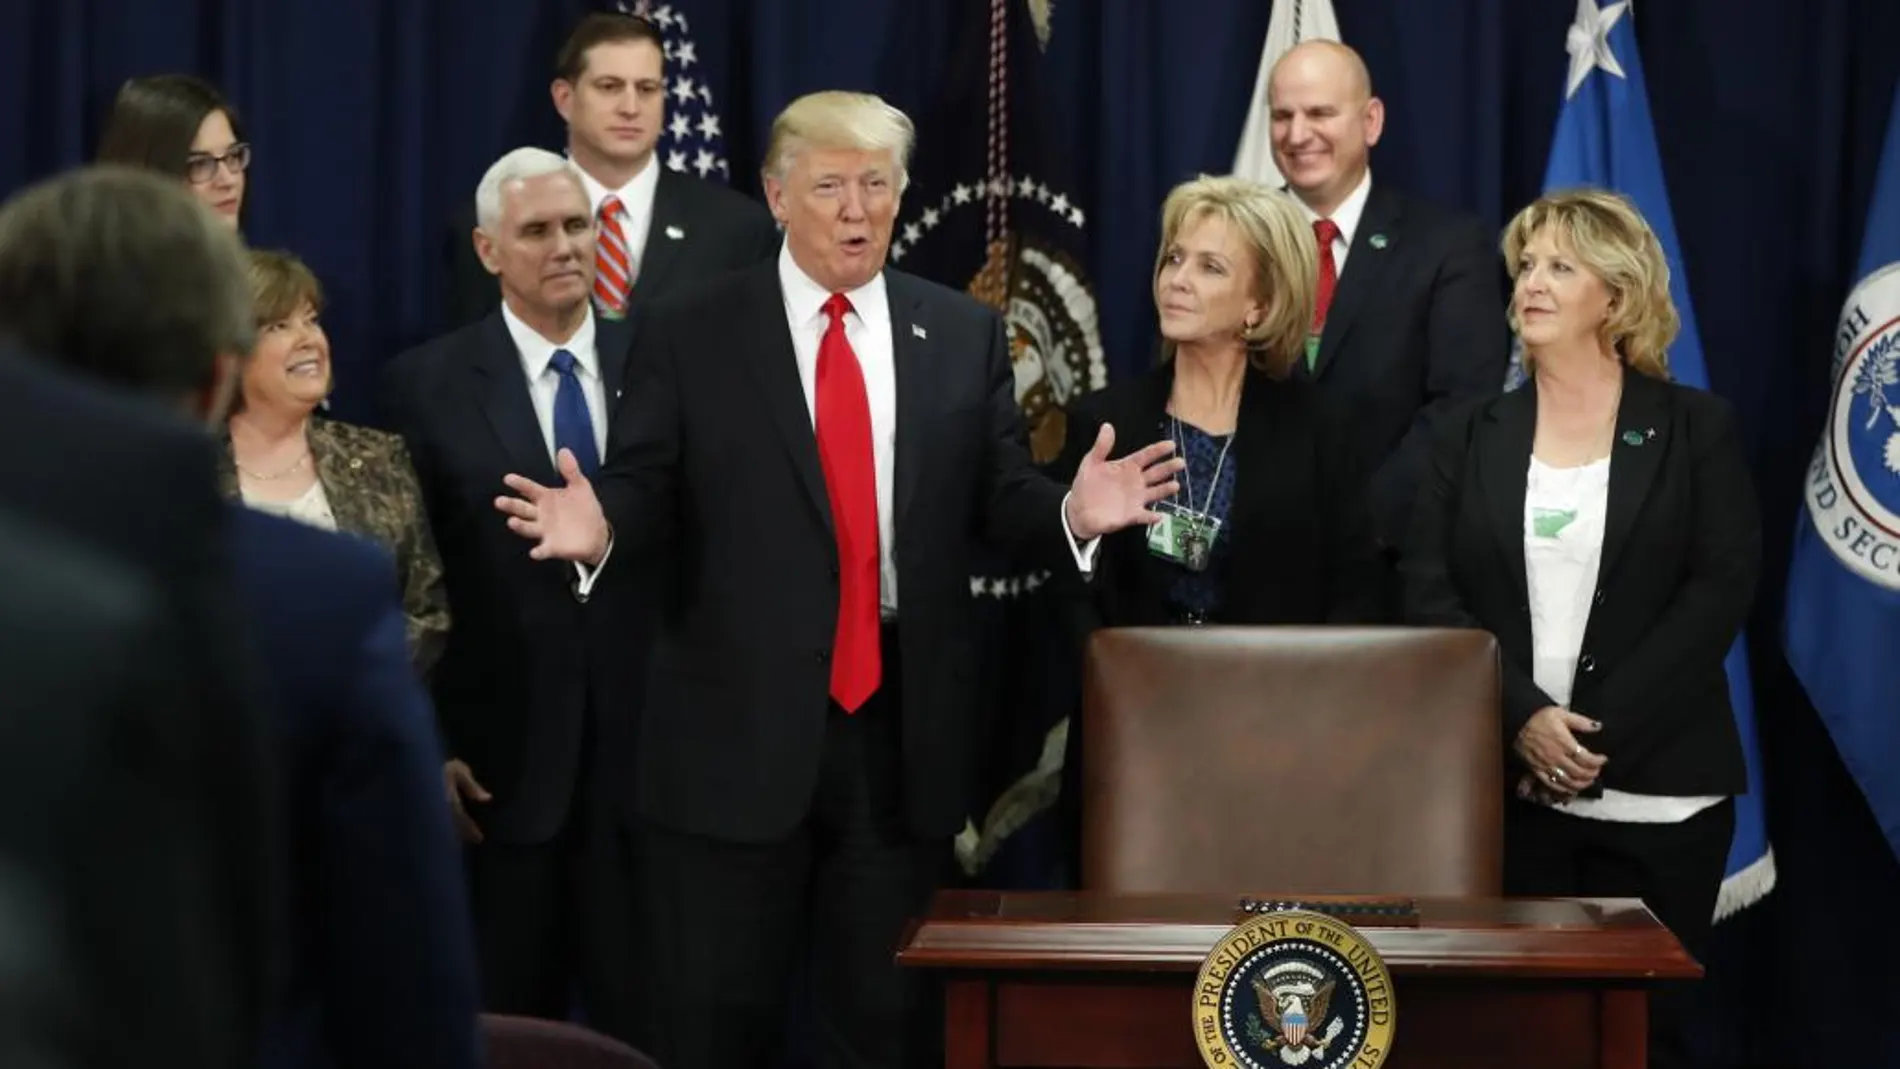 Donald Trump, acompañado de Mike Pence y otros, durante un acto en hoy en Washington.